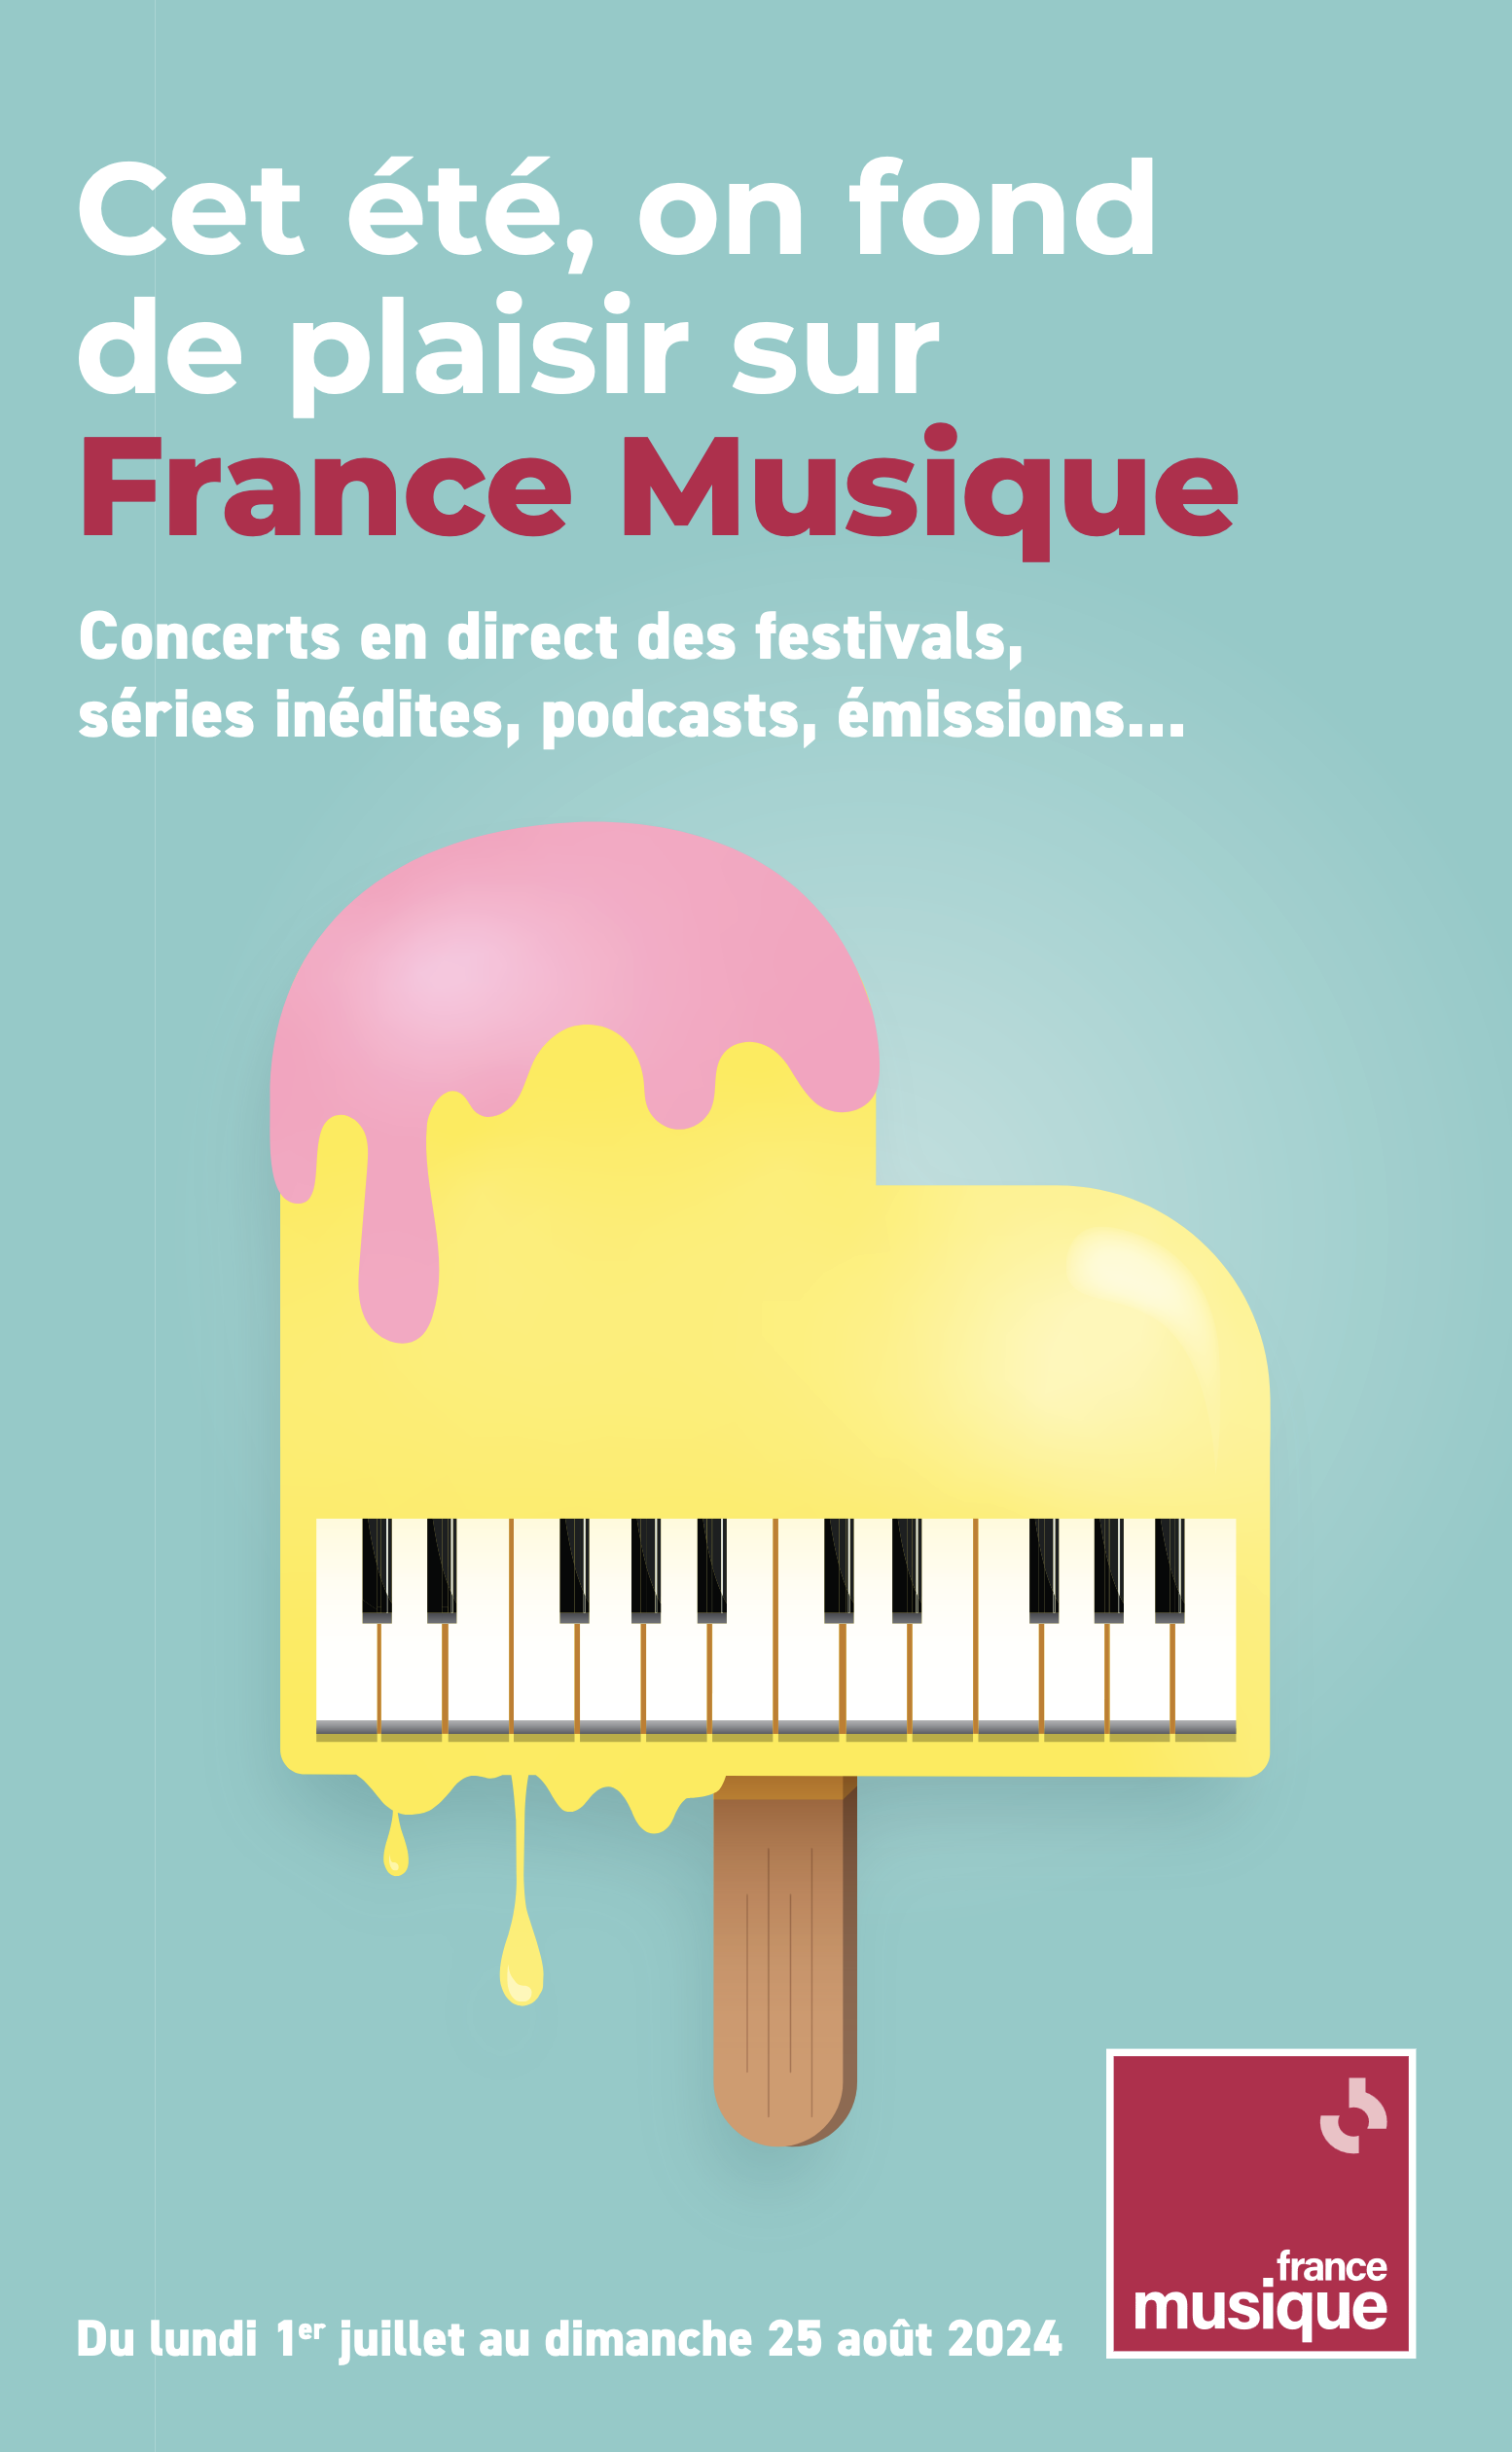 Cet été 2024, on fond de plaisir sur France Musique